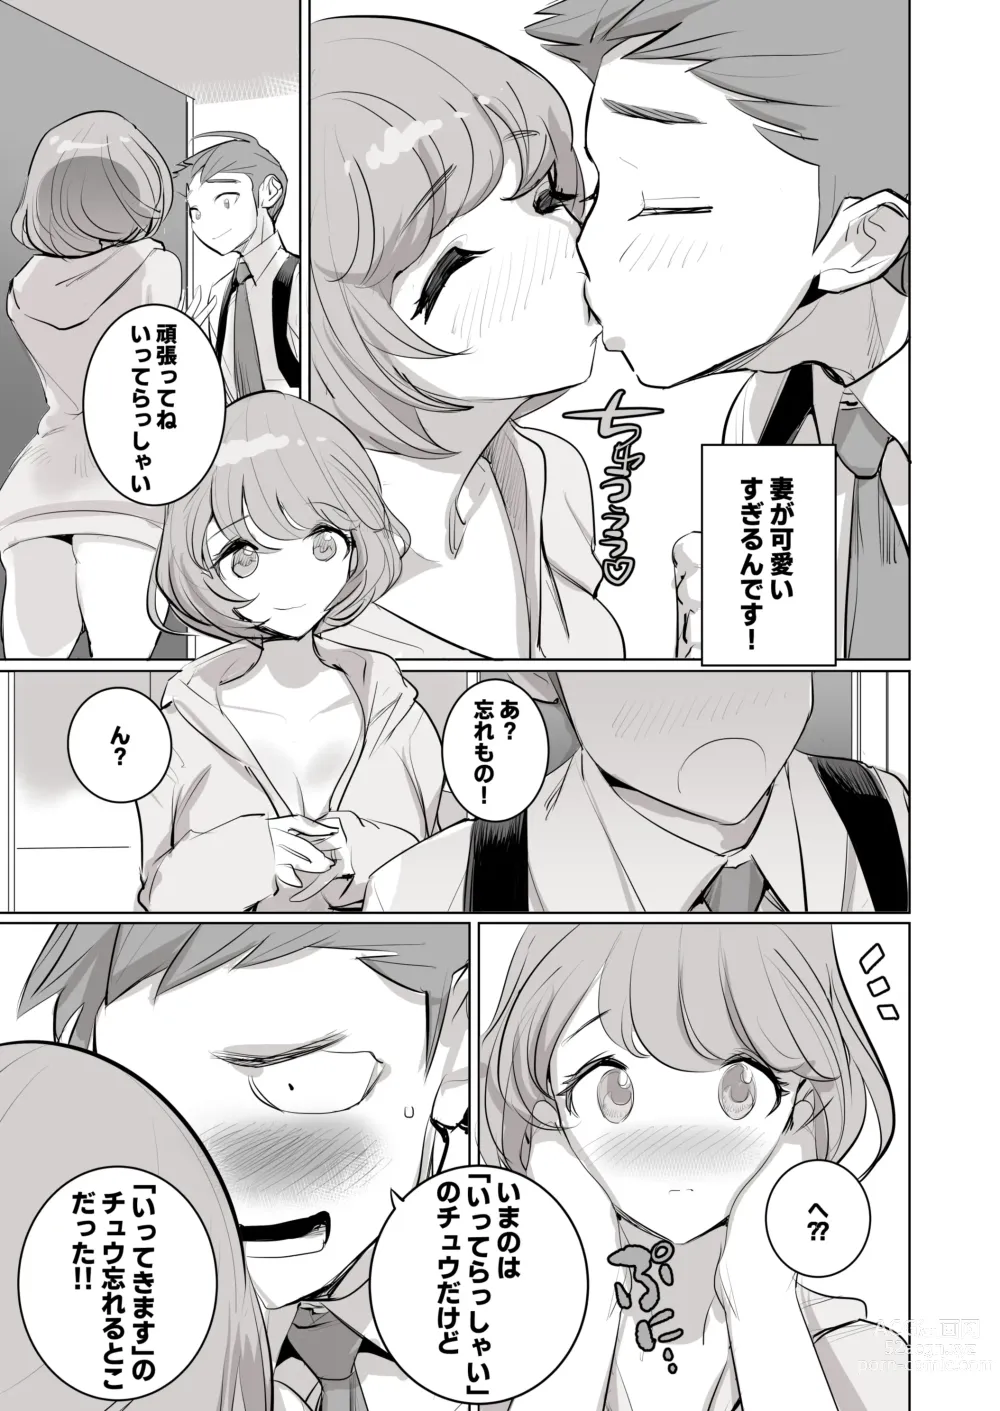 Page 4 of doujinshi 人気同人作家の妻とラブラブ新婚性活でも妻が好きすぎてNTRしてしまうボクなんです